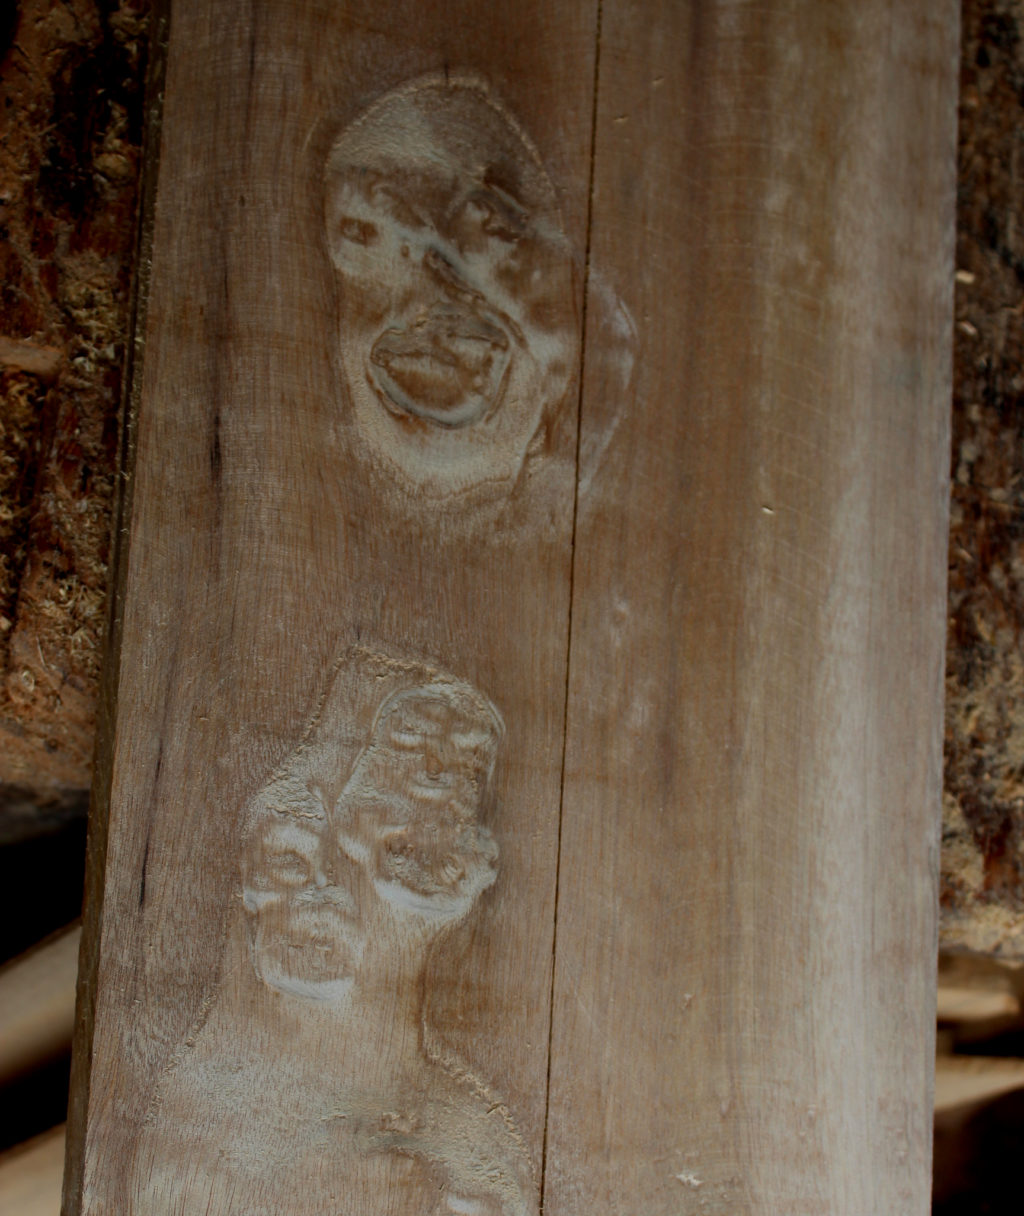 Pareidolia in wood recognize faces